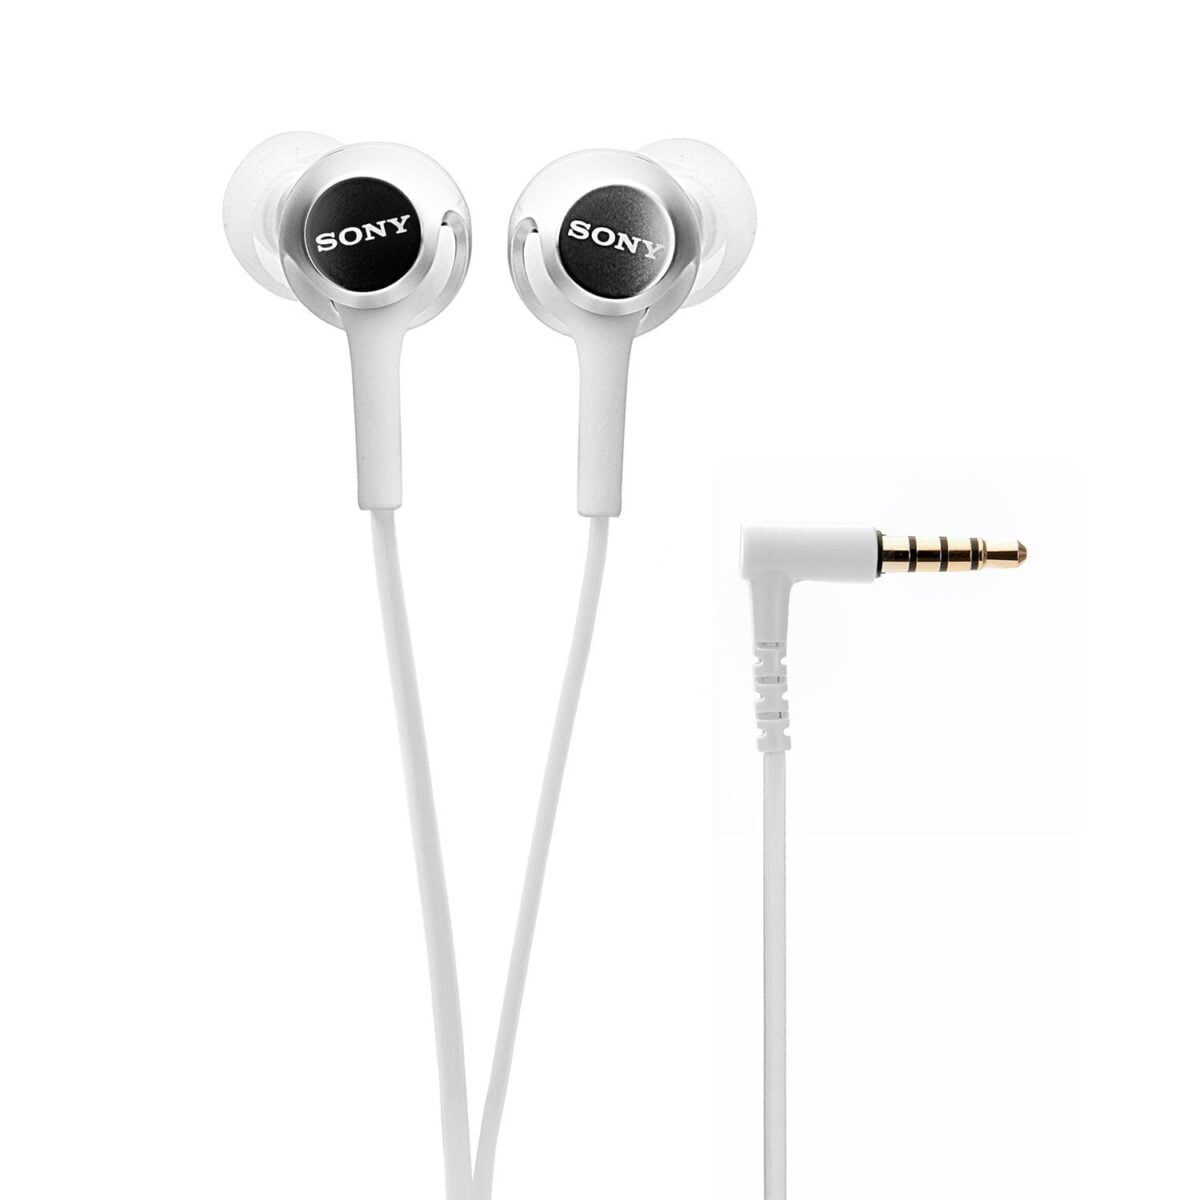 Sony mdr ex155 in ear headphones 3 sony mdr-ex155ap in-ear headphones